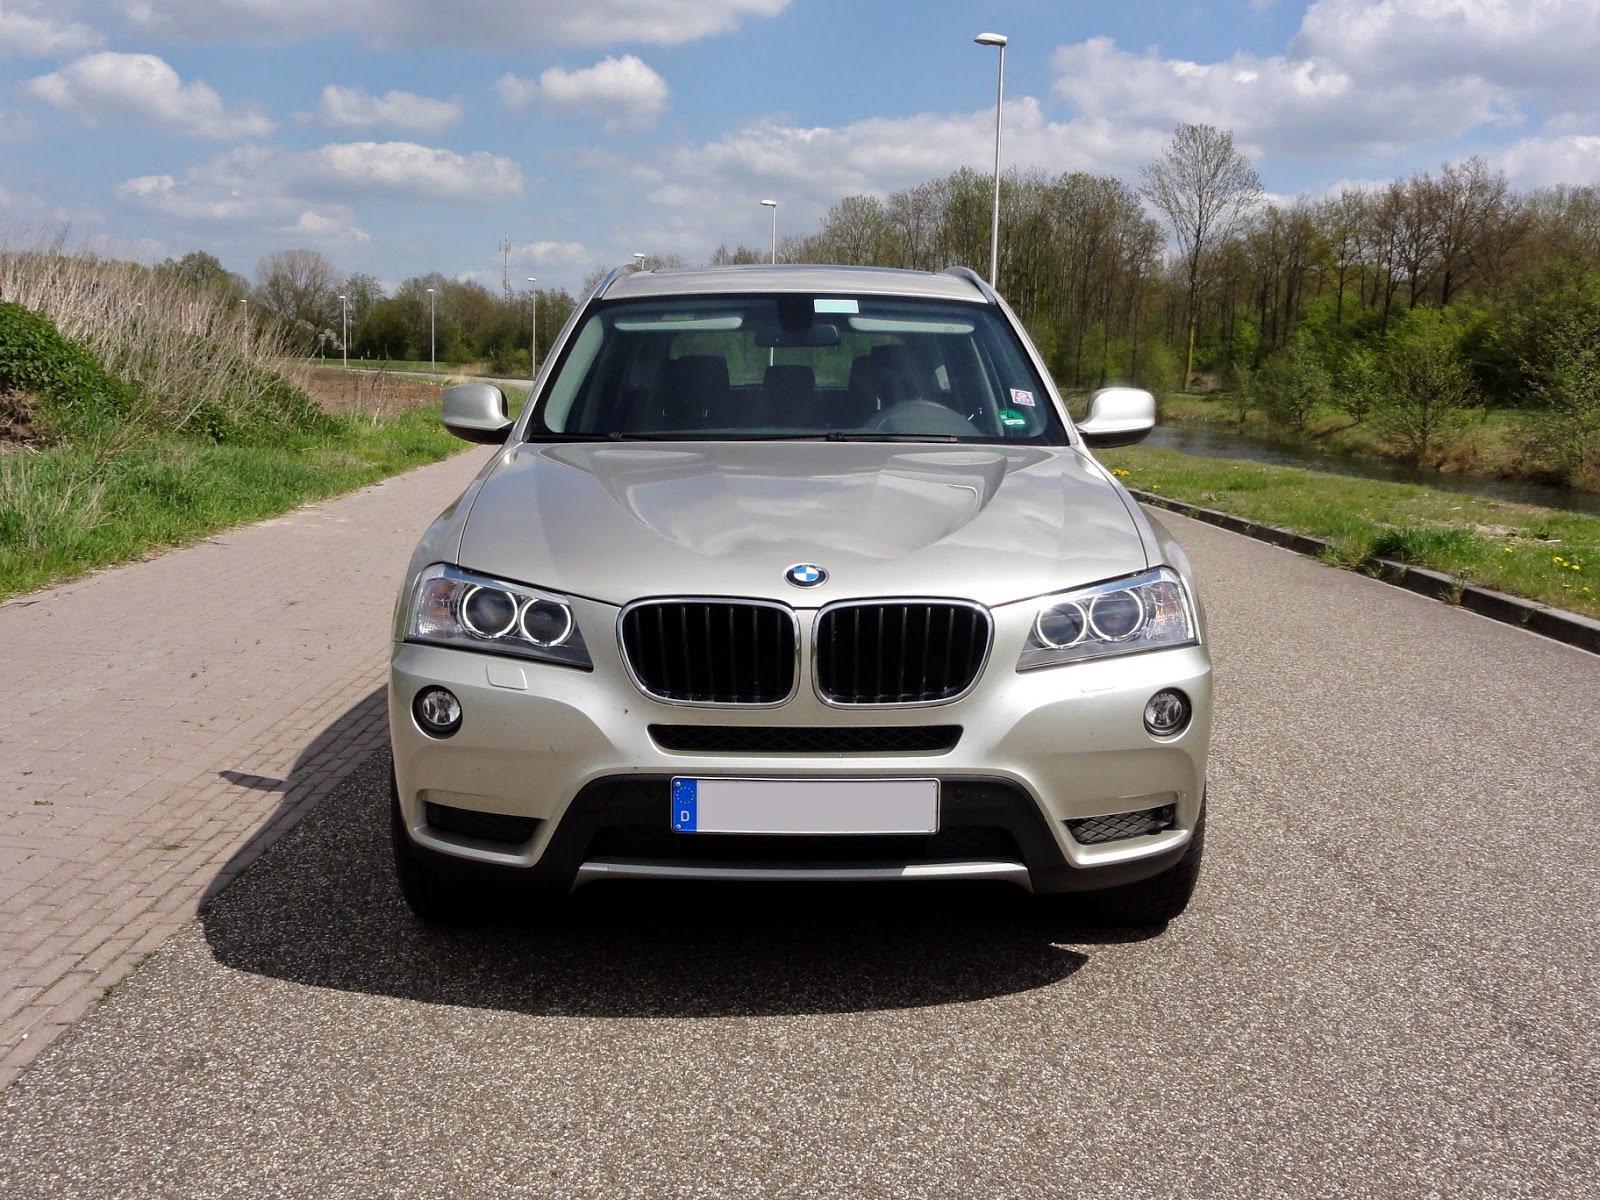 Guitigefilmpjes: Picture update: BMW X3 xDrive20d (2012 / F25)